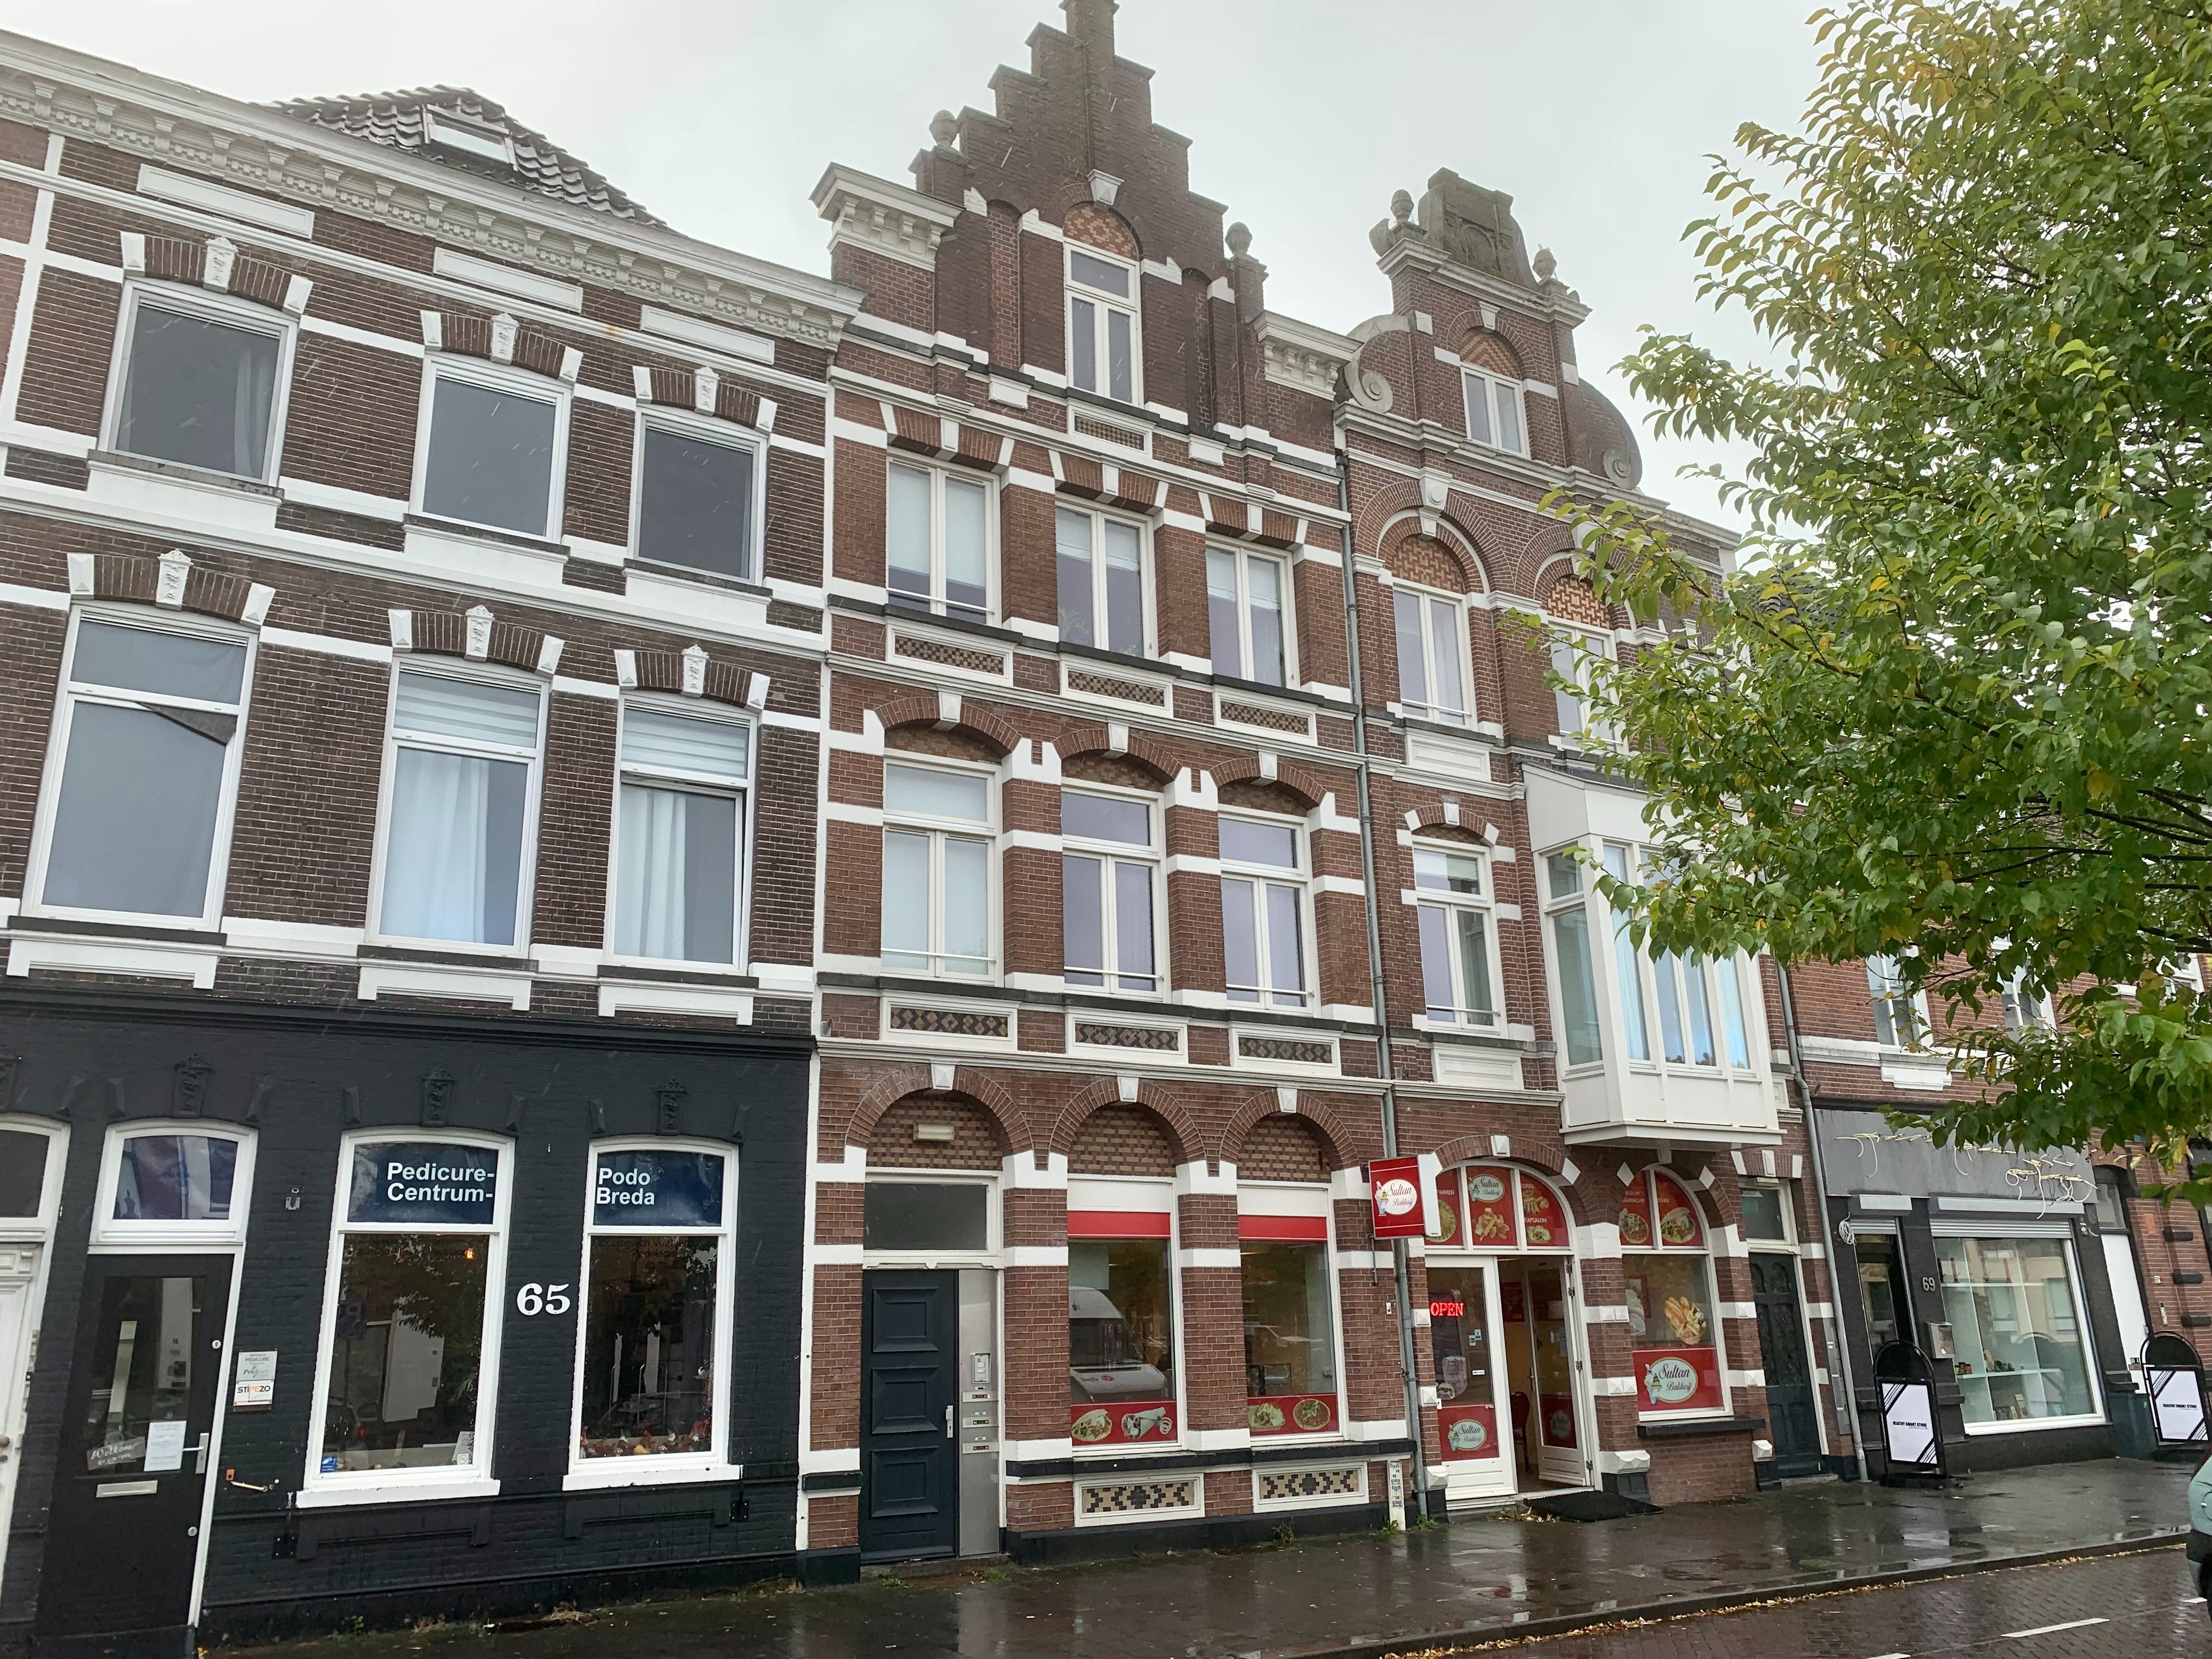 Winkelpand - Breda - Nieuwe Haagdijk 67 c